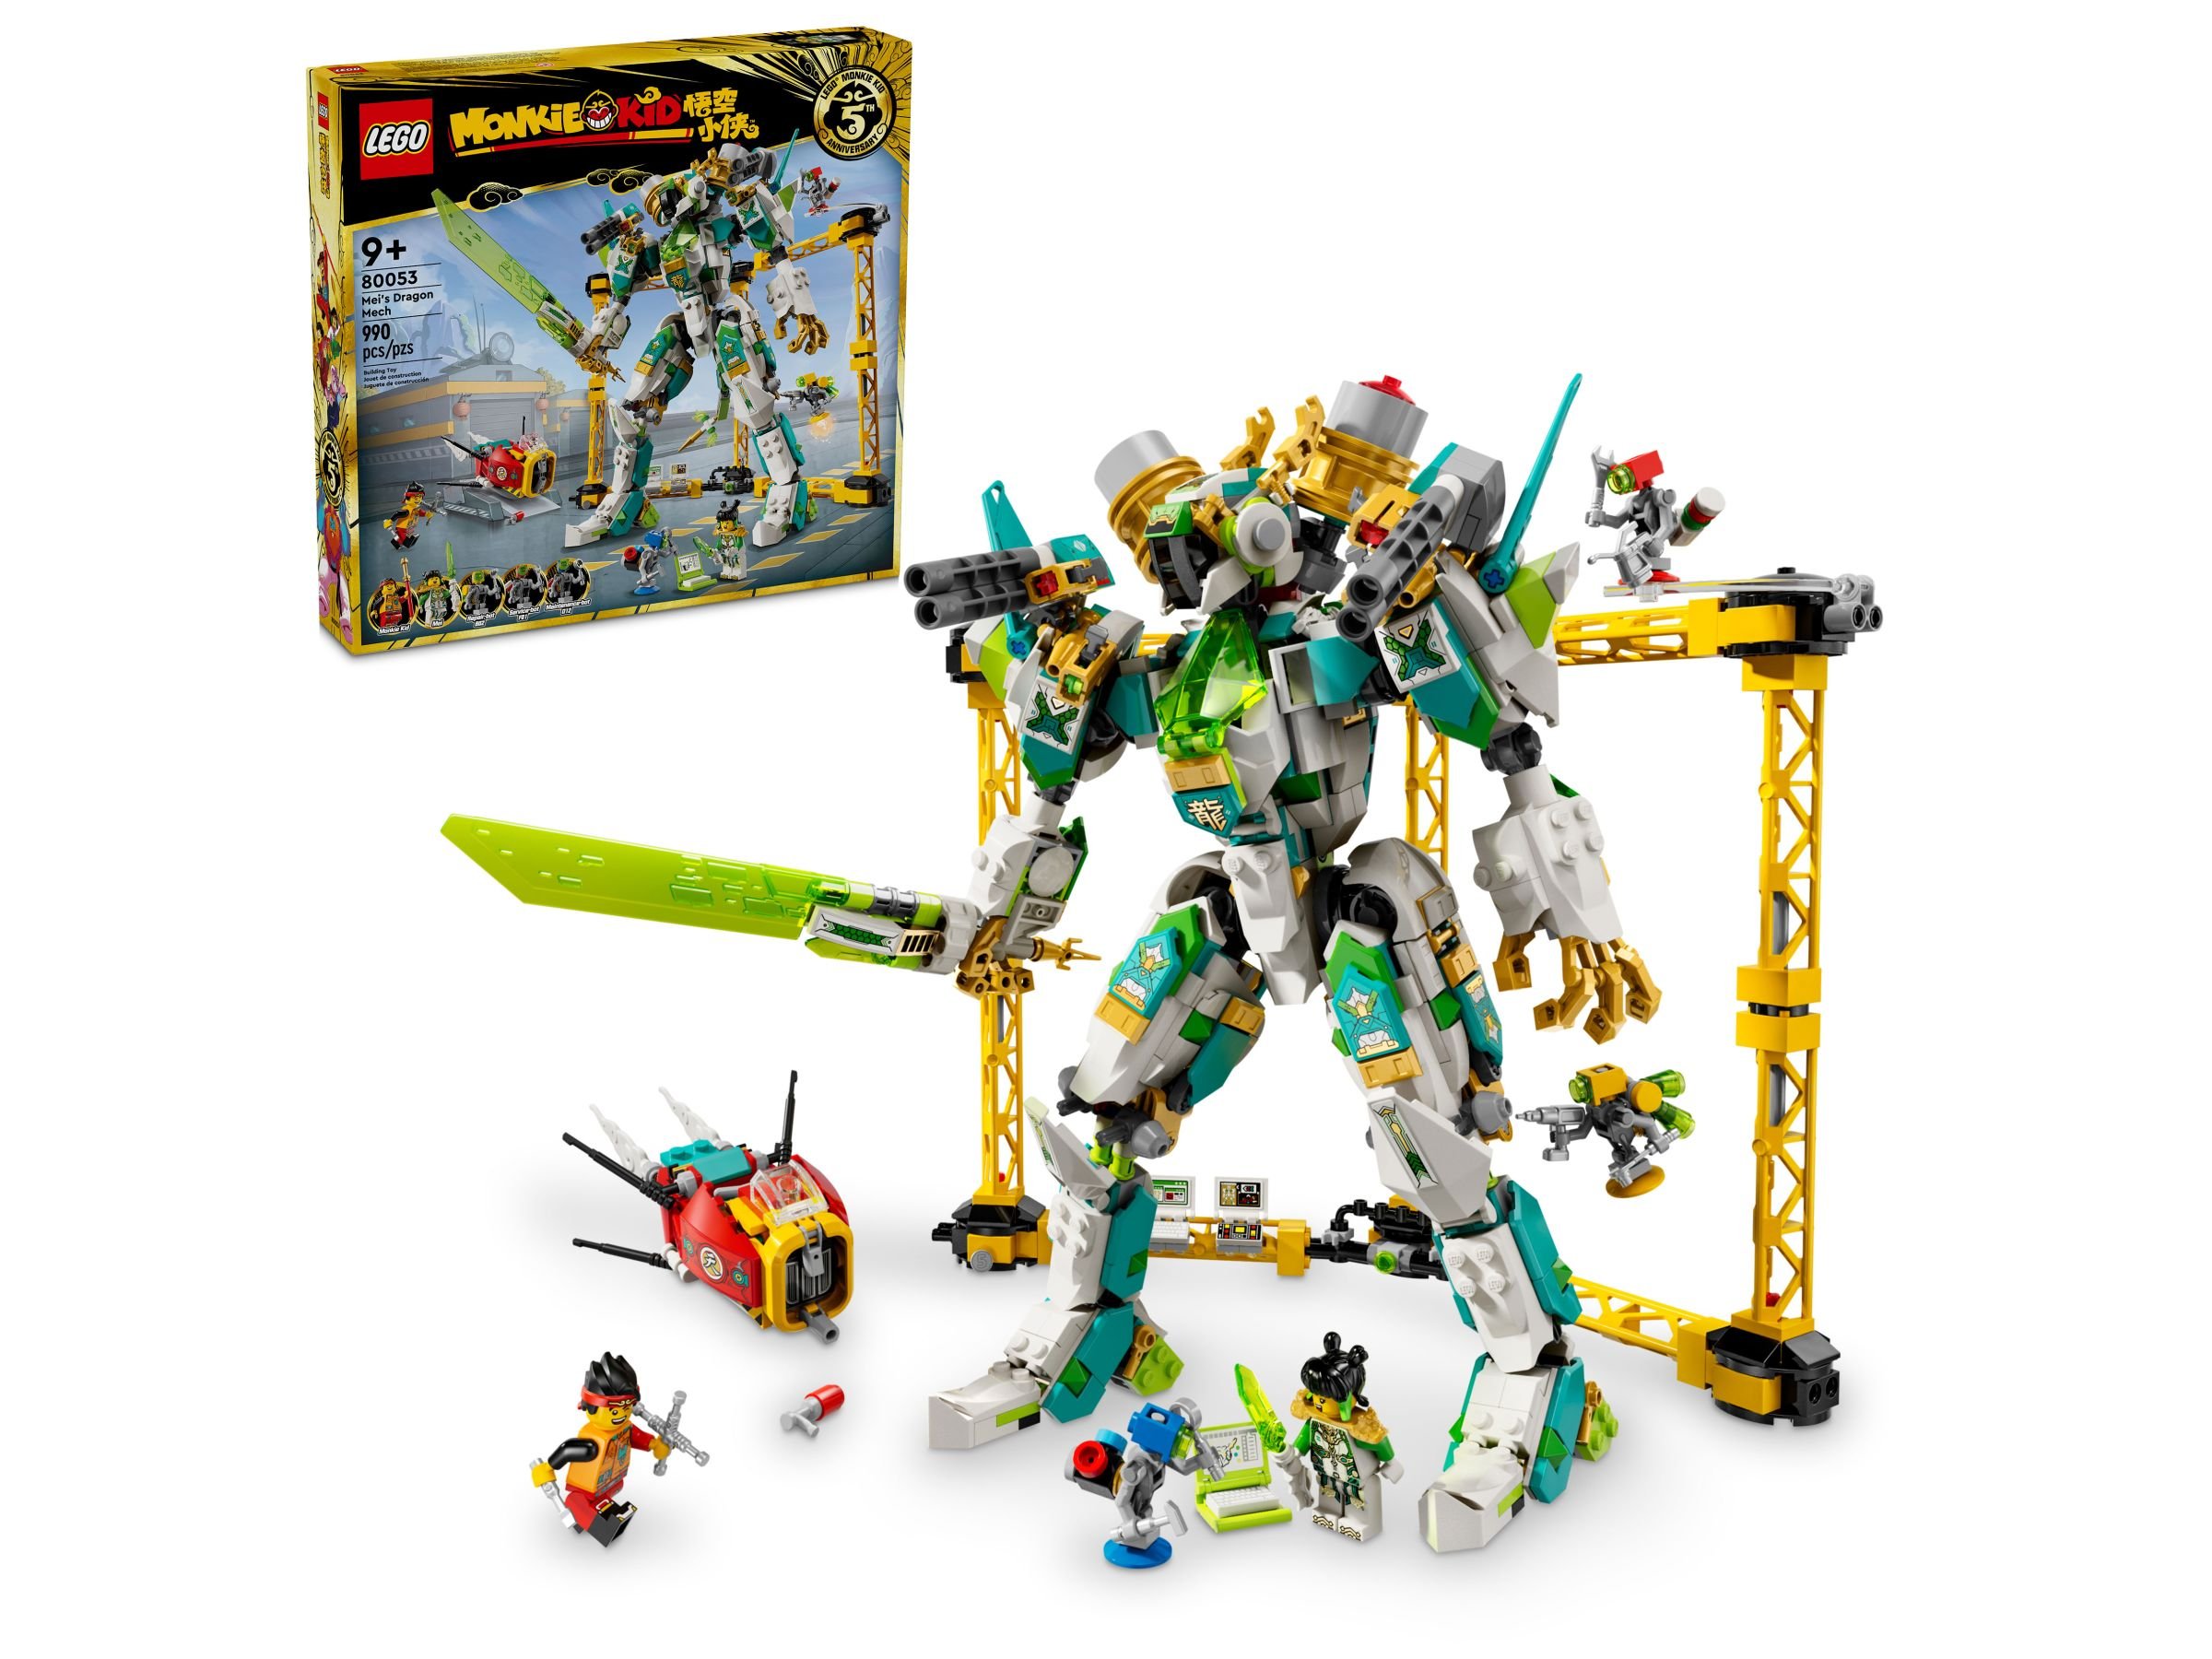 LEGO Monkie Kid 80053 Meis Drachen-Mech LEGO_80053_alt1.jpg